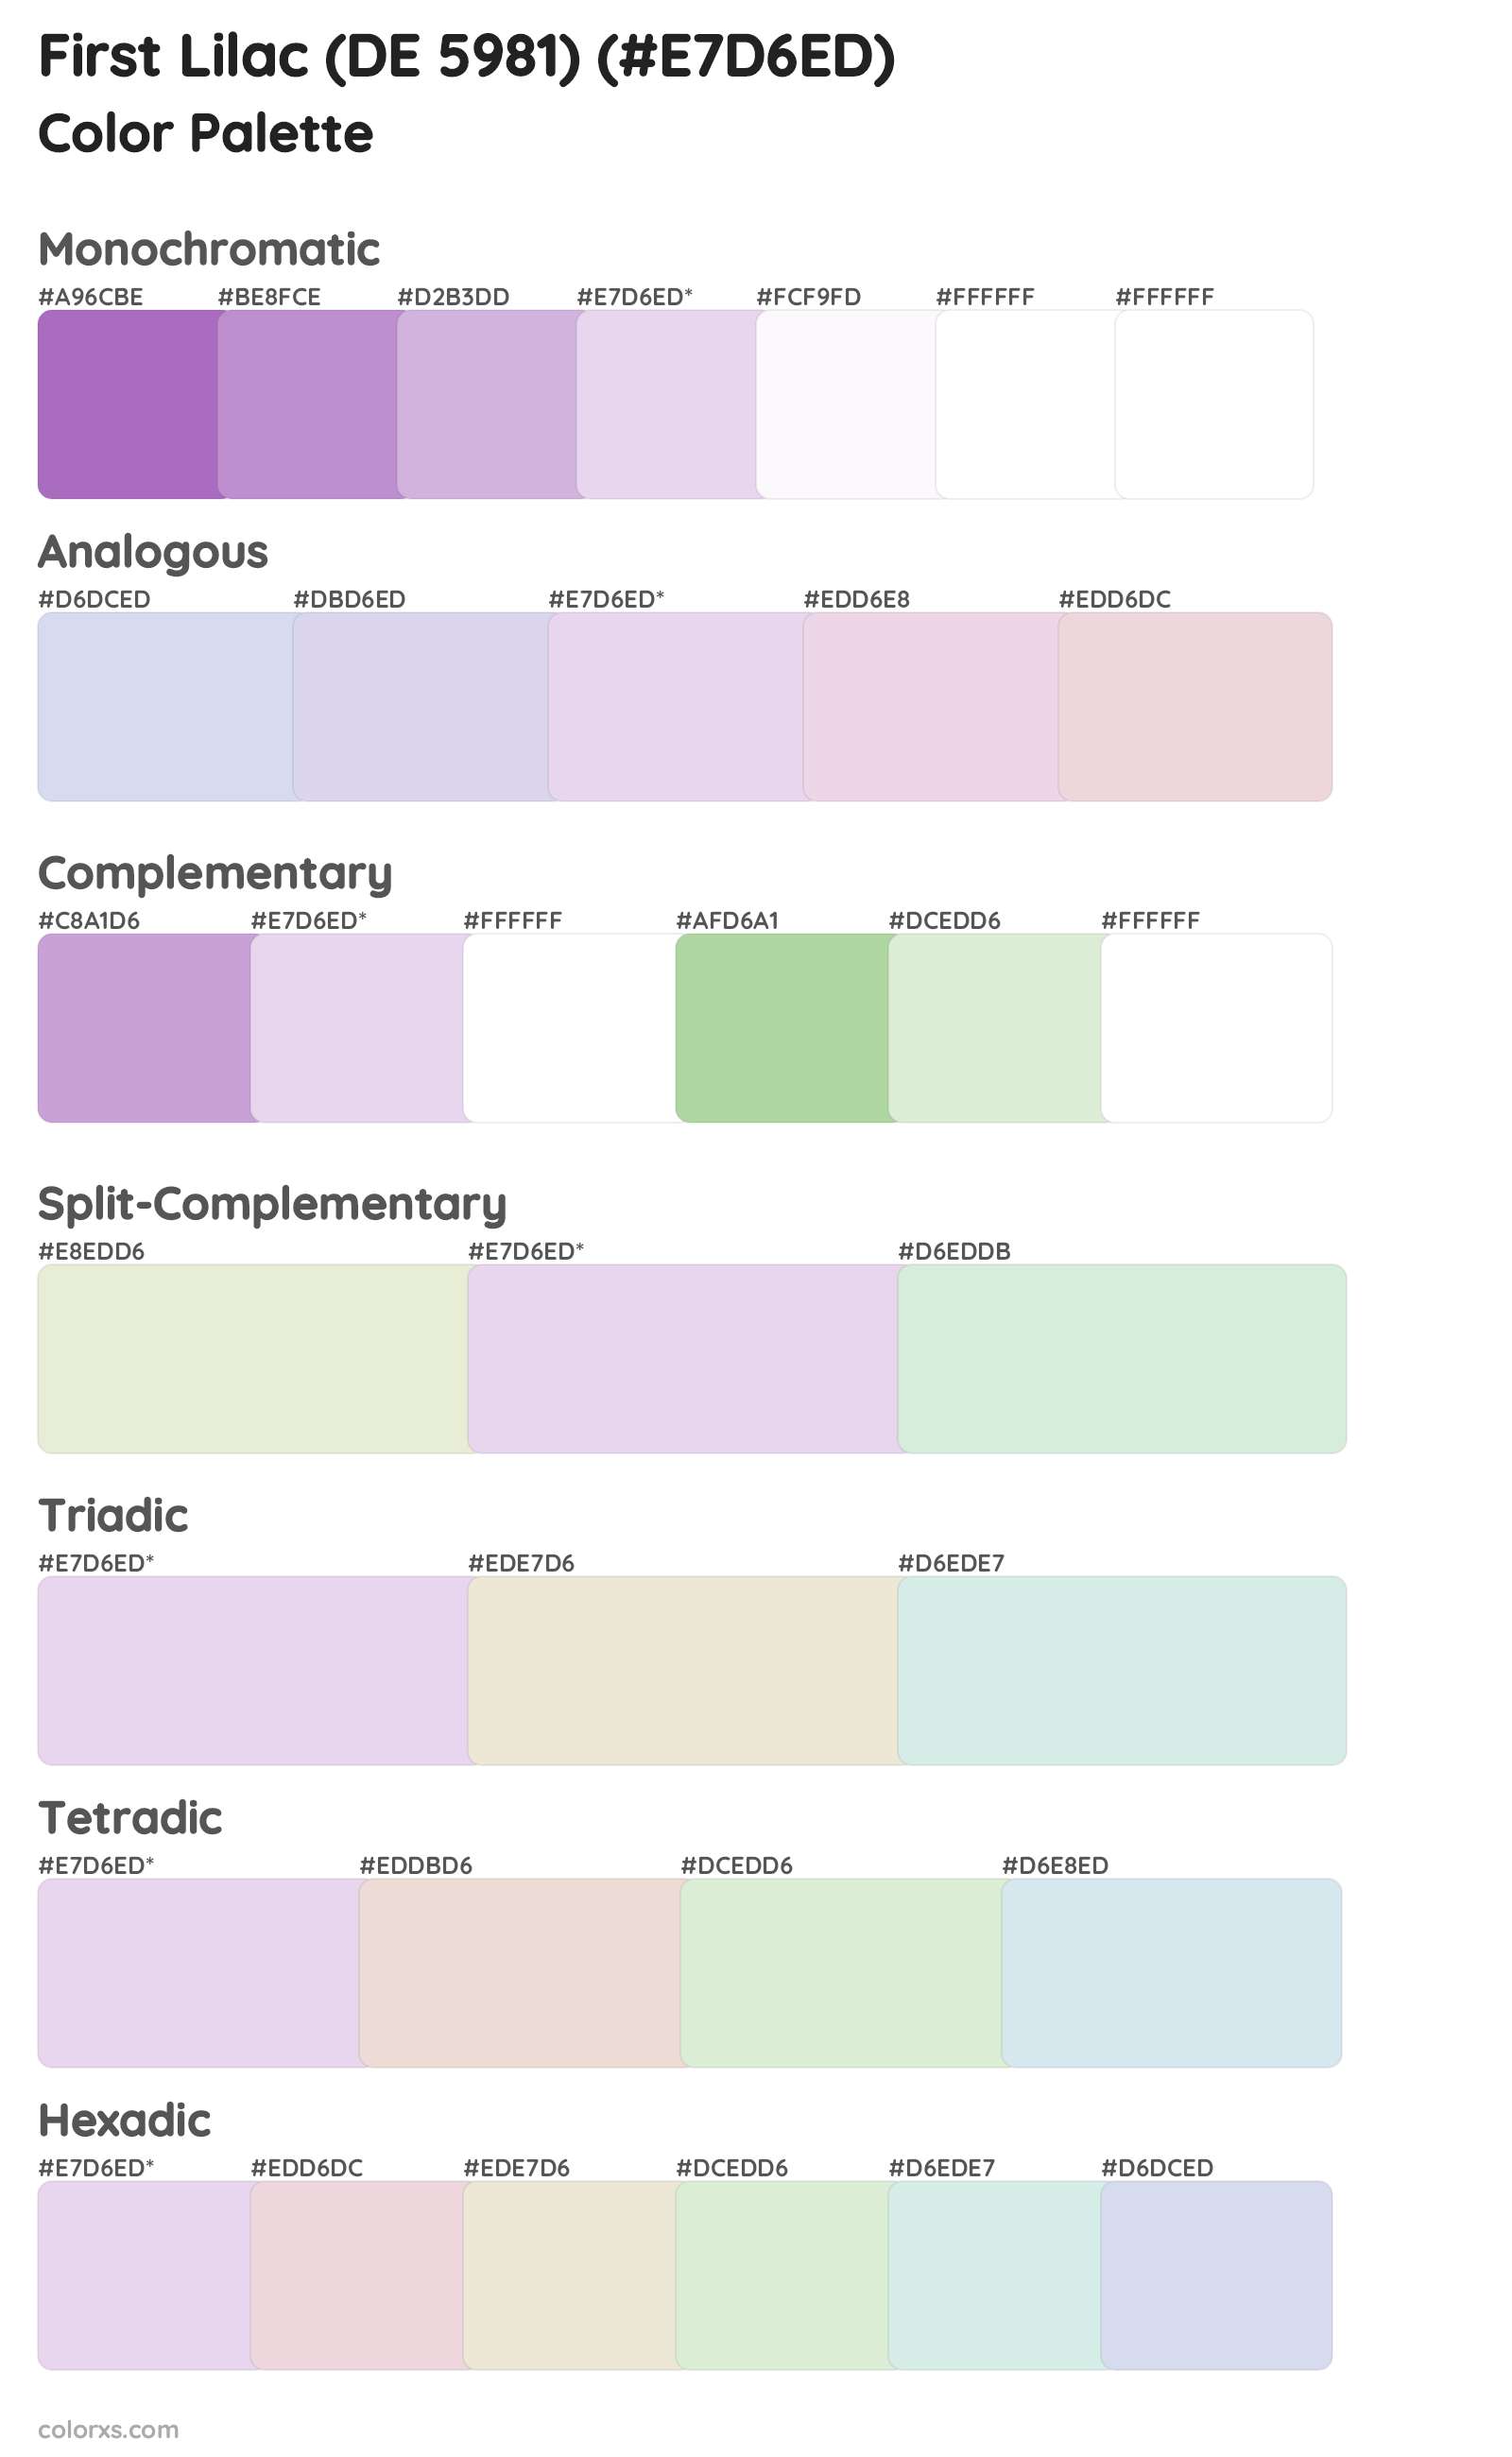 First Lilac (DE 5981) Color Scheme Palettes